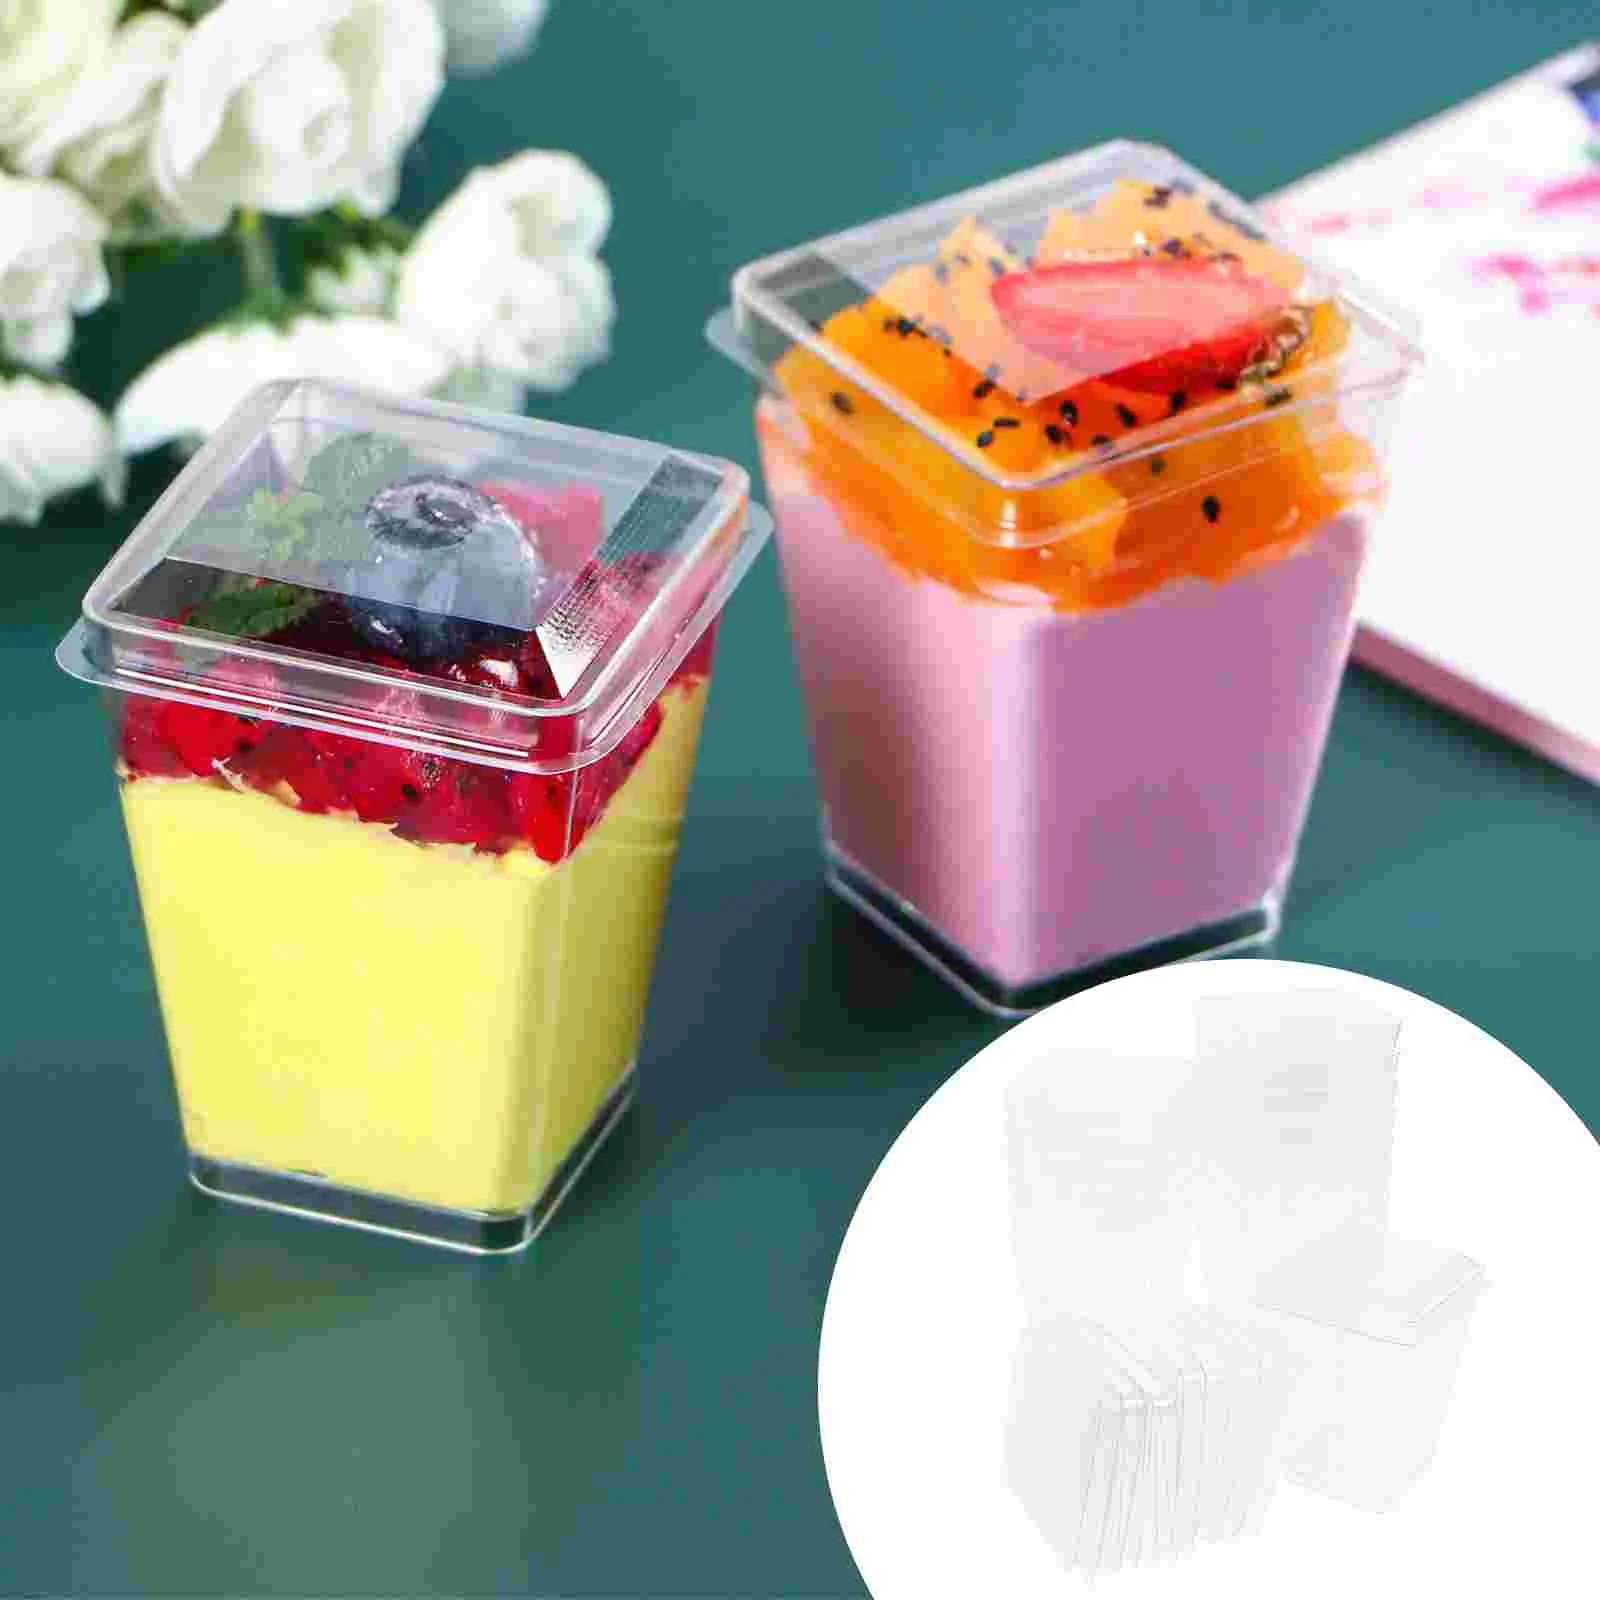 

50 Pcs Tiramisu Holders Plastic Dessert Cups Square Clear Fruit Bowls Container Appetizer Parfait Party Mousse